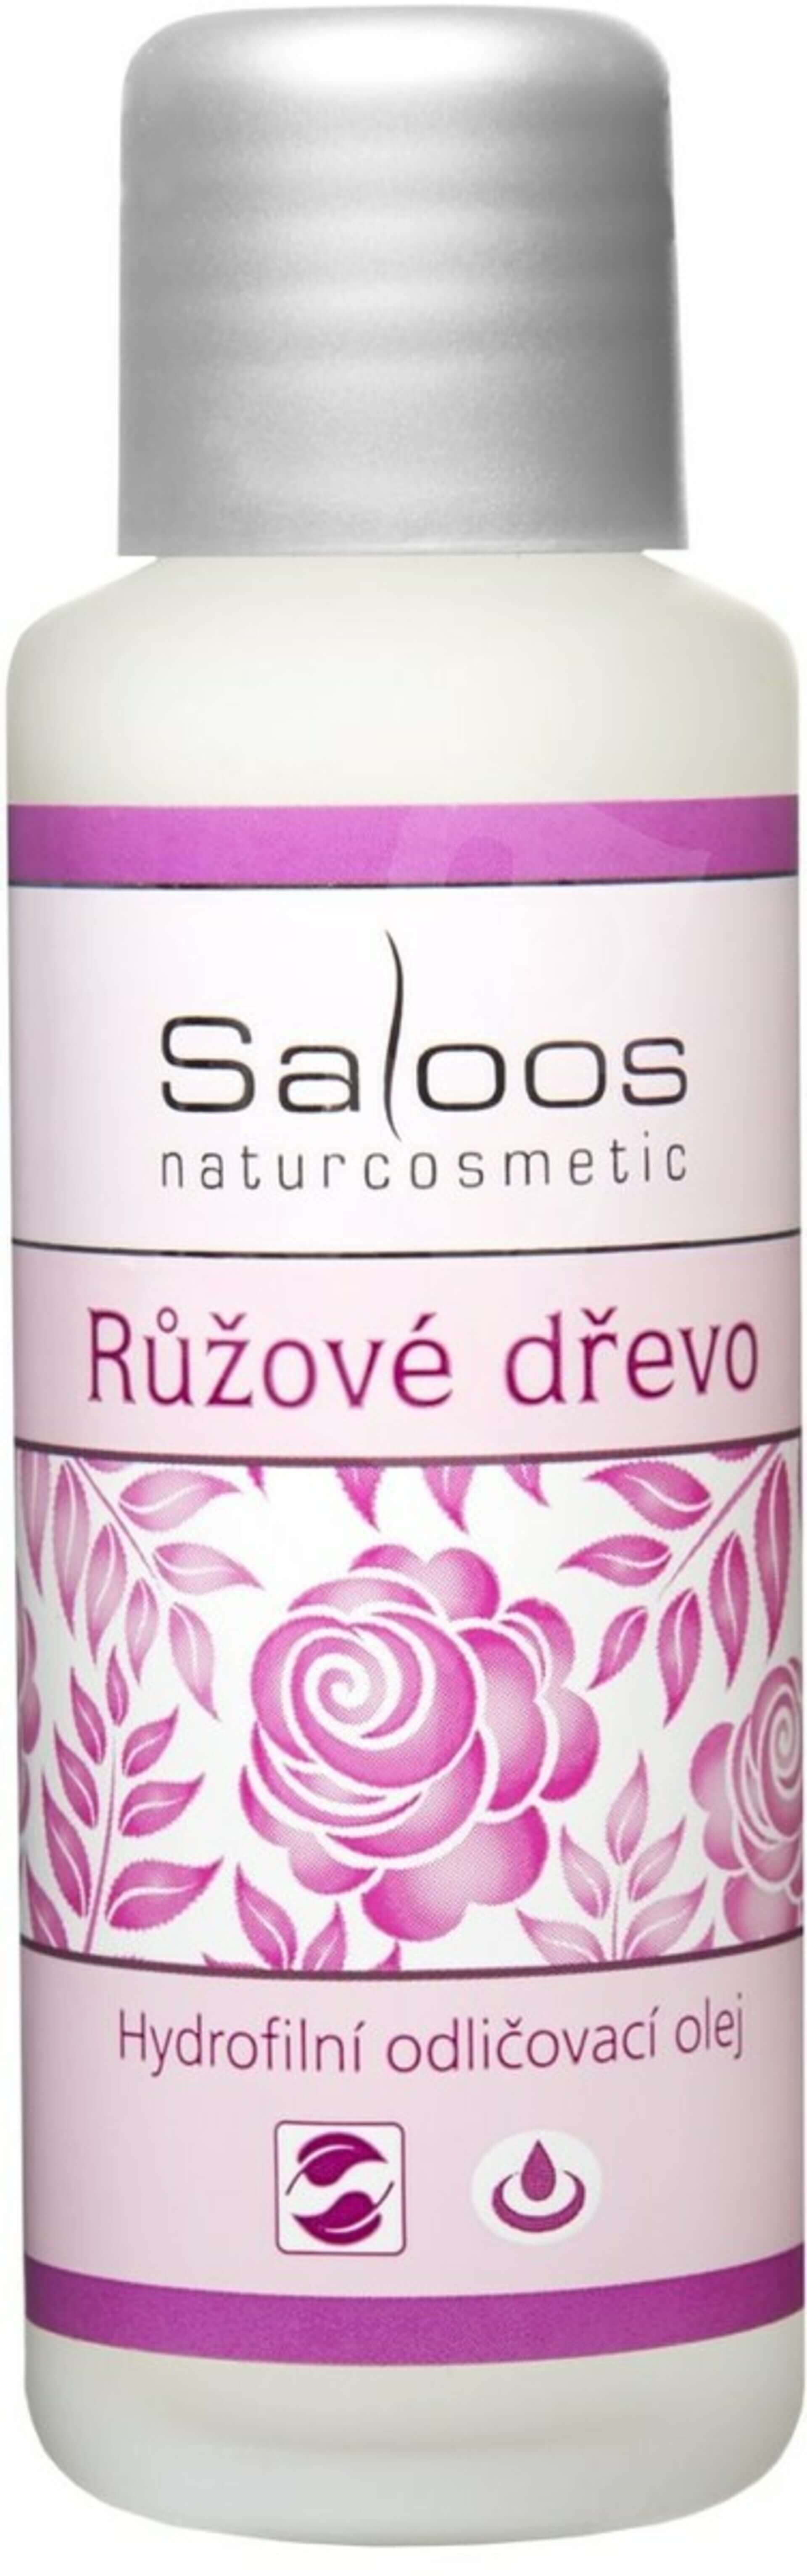 Značka SALOOS - Hydrofilný odličovací olej Ružové drevo SALOOS Naturcosmetics 50 ml